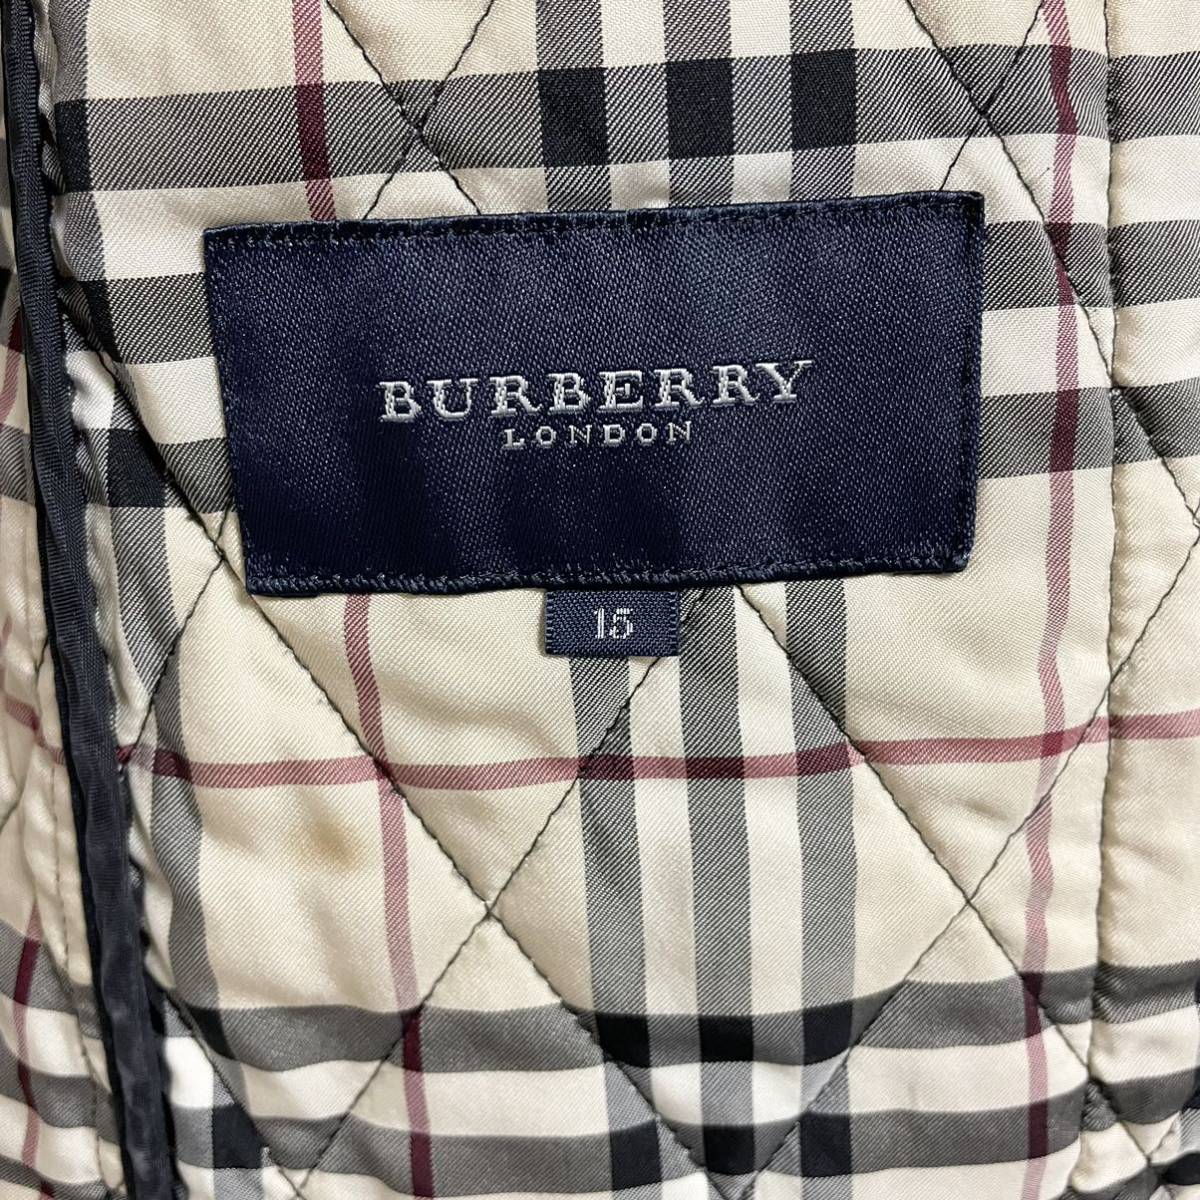  быстрое решение *BURBERRY Burberry London London стеганная куртка noba проверка 15 номер 46 XL черный 